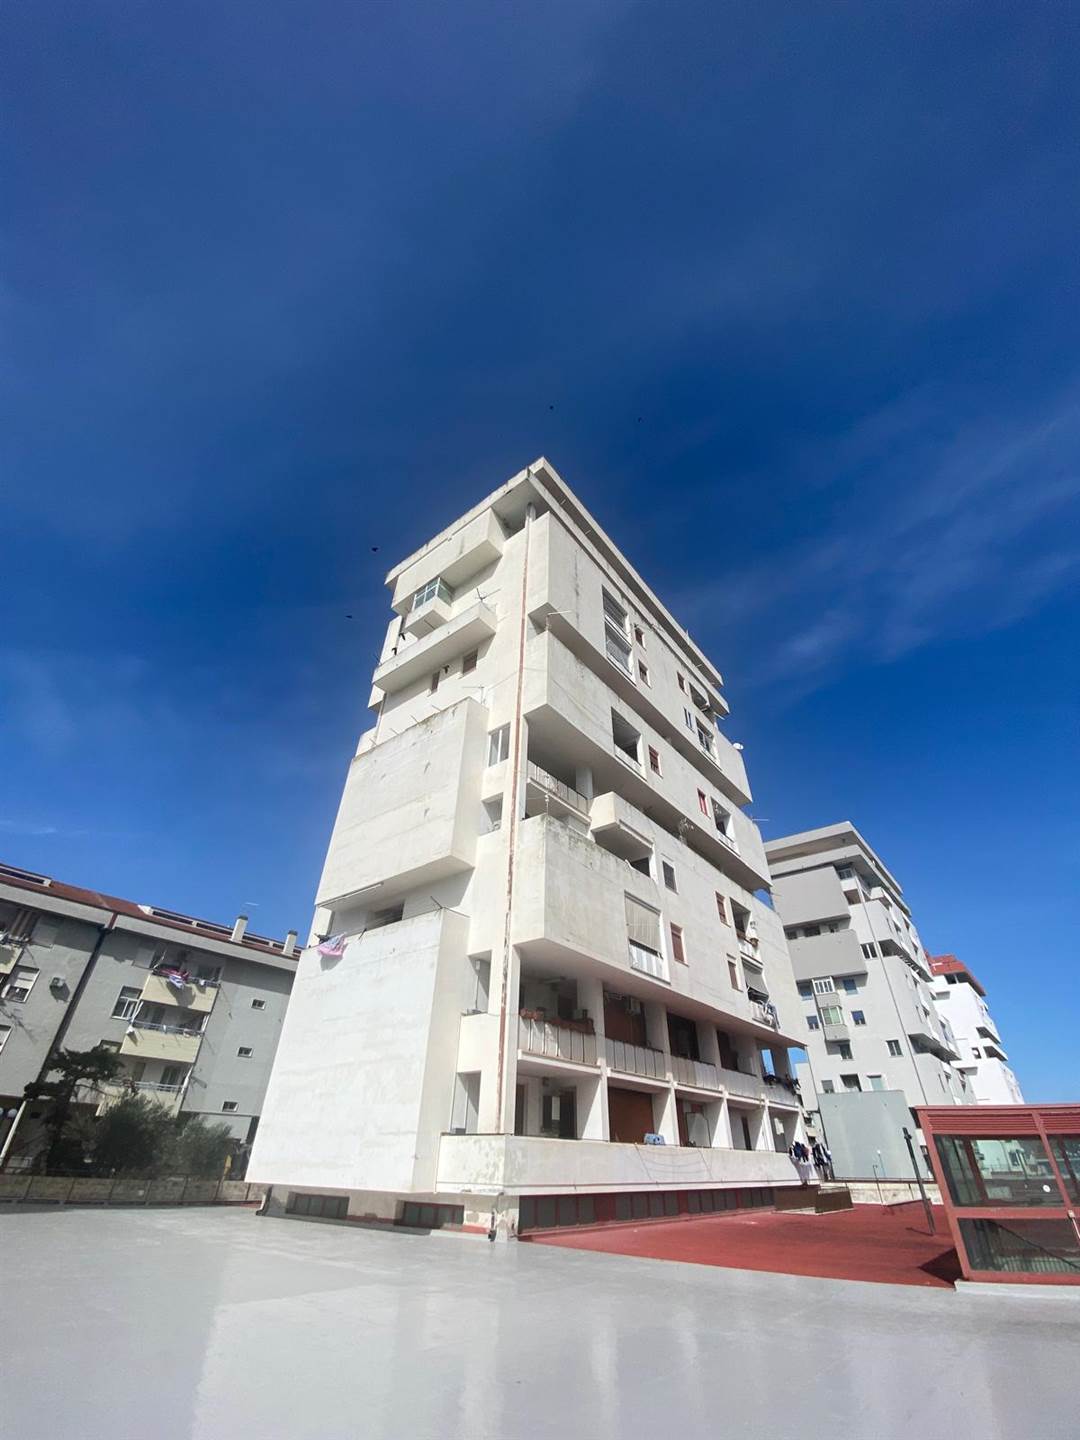 Appartamento in vendita a Policoro, 6 locali, prezzo € 153.000 | PortaleAgenzieImmobiliari.it